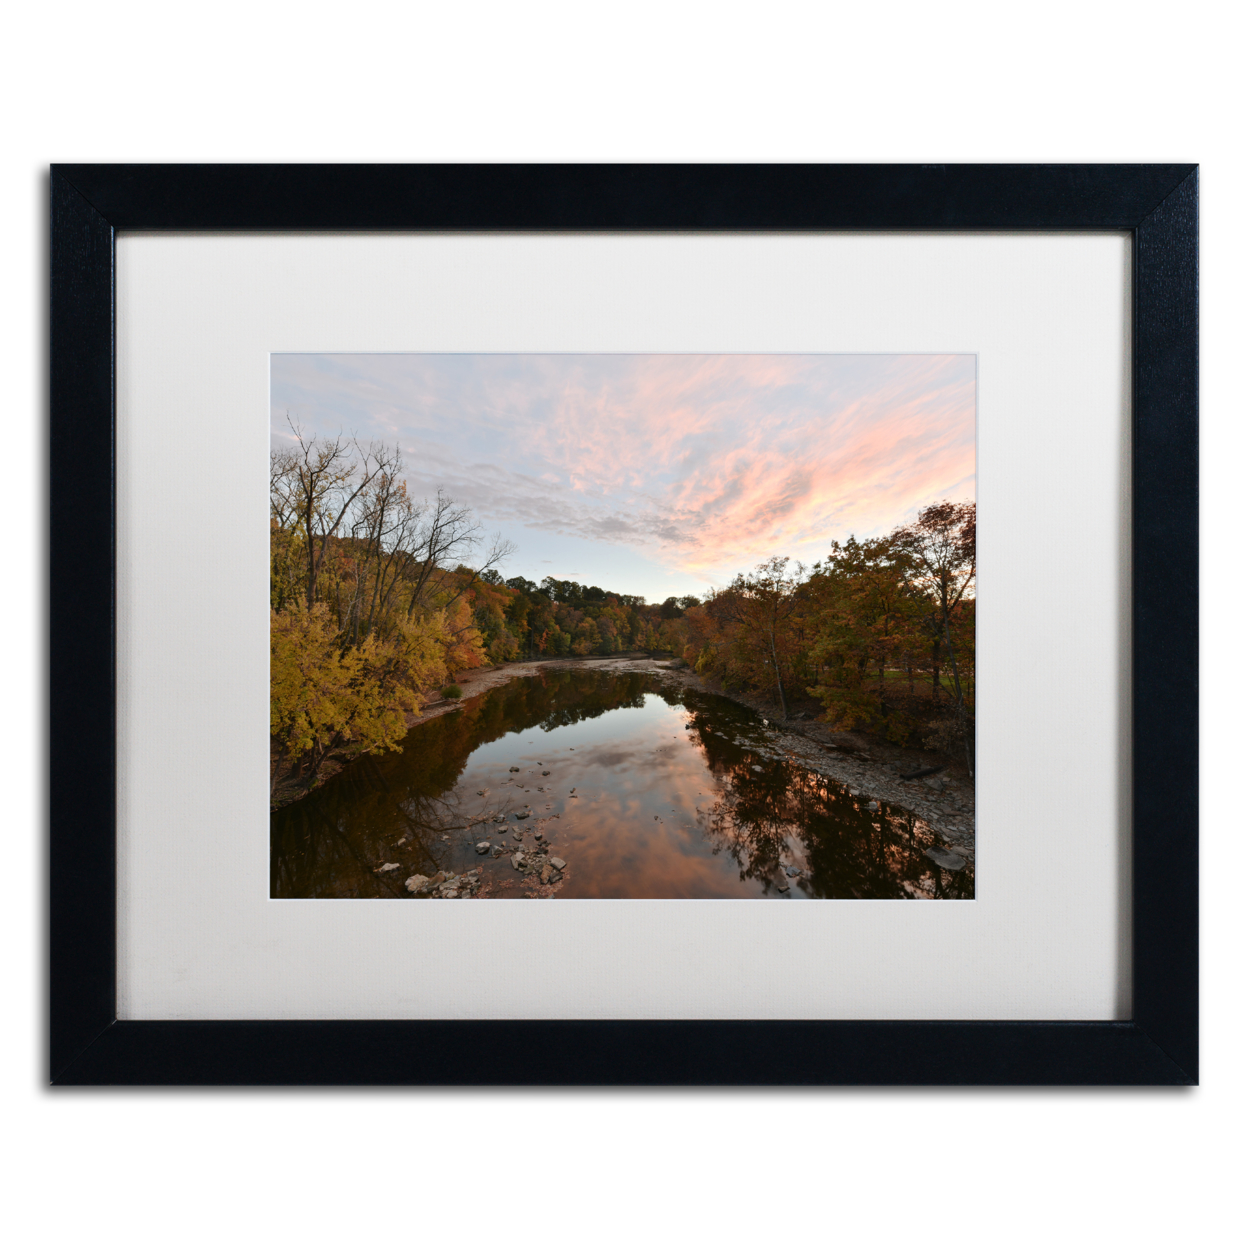 Kurt Shaffer 'Rocky River Autumn Sunset' Black Wooden Framed Art 18 X 22 Inches